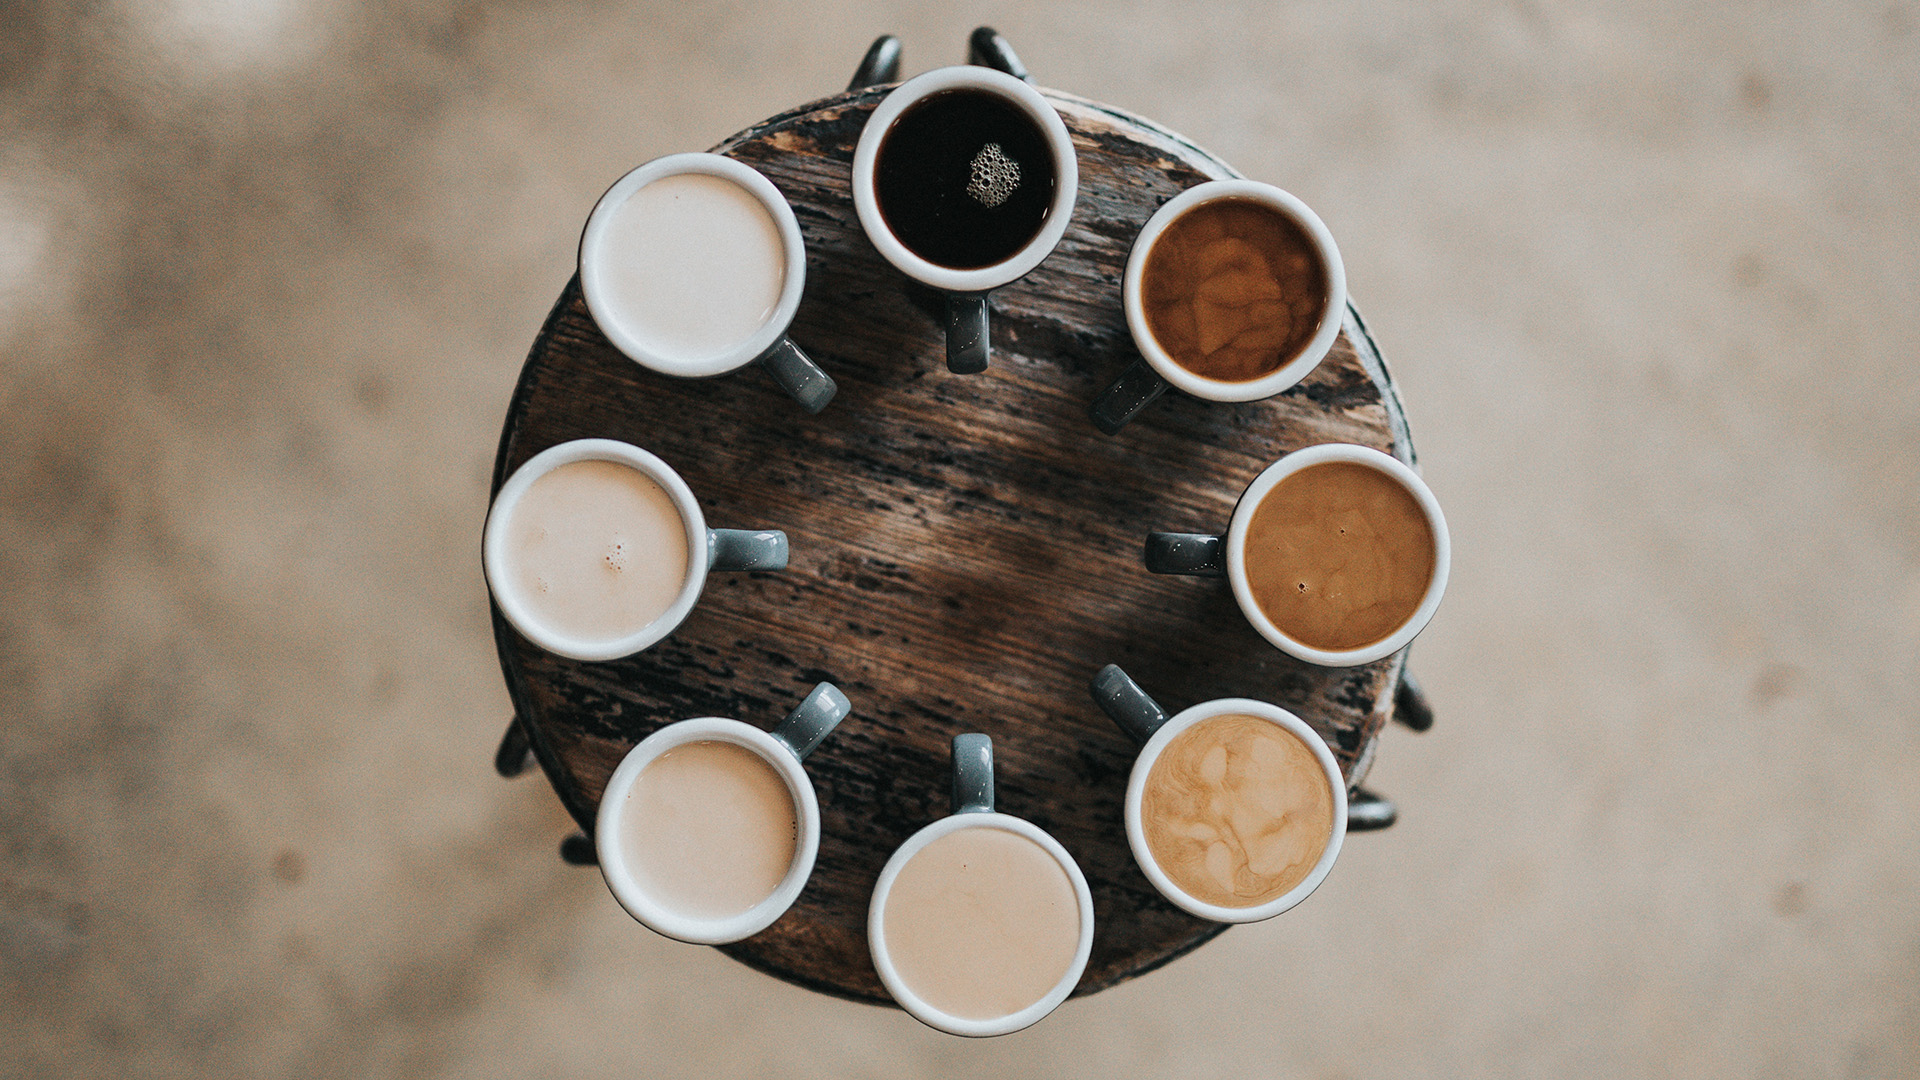 8 Kaffeetassen mit verschiedenen Kaffeespezialitäten im Kreis angeordnet wir das Ziffernblatt einer Uhr